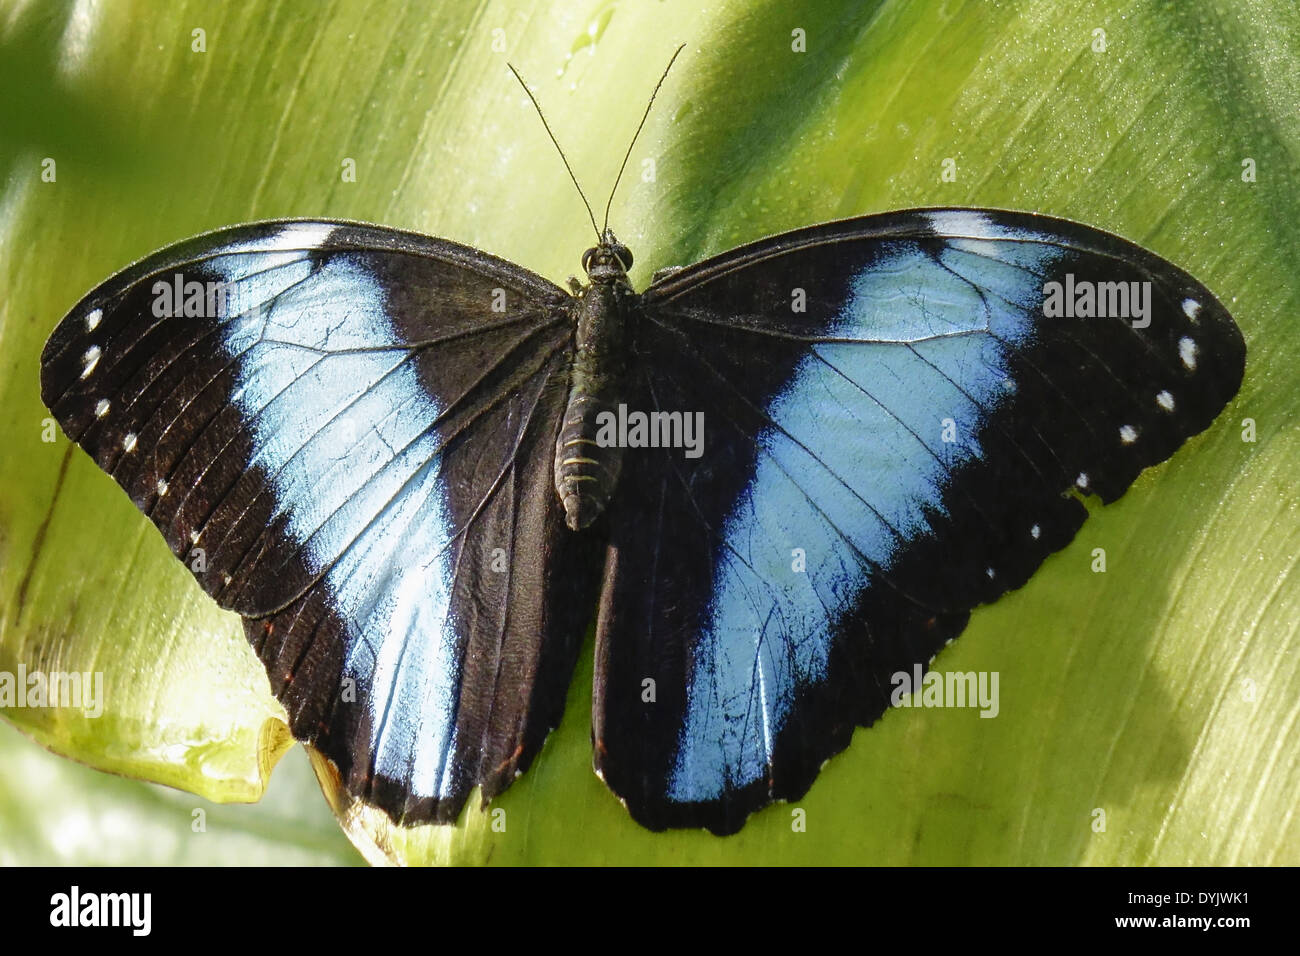 Tropischer Schmetterling, Blauer Morphofalter (Morpho peleides) Foto de stock